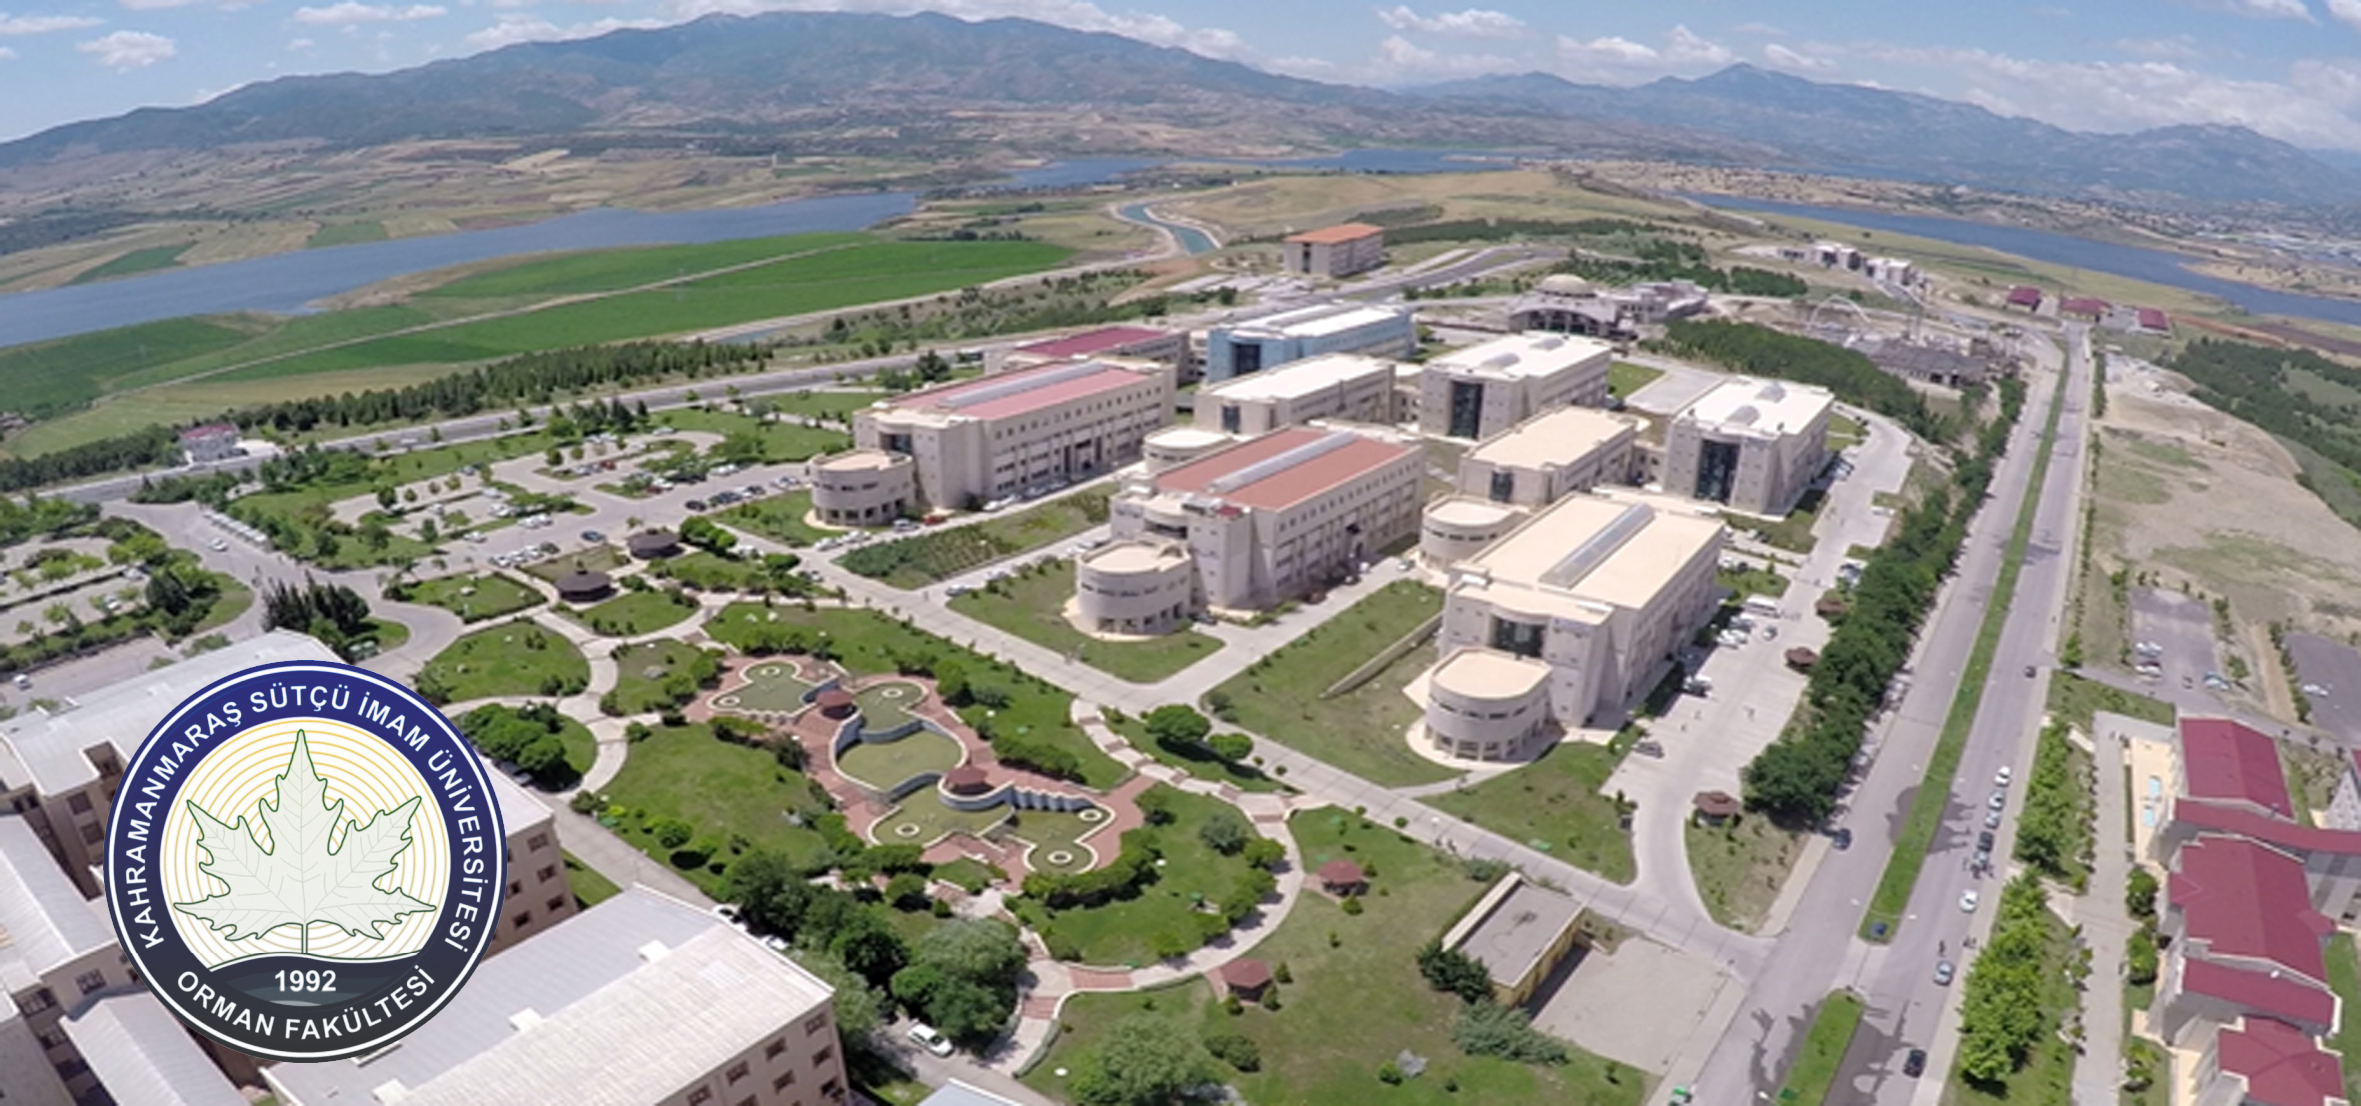 kahramanistiklal universitesi find and study 8 - Université Kahramanmaraş Istiklal